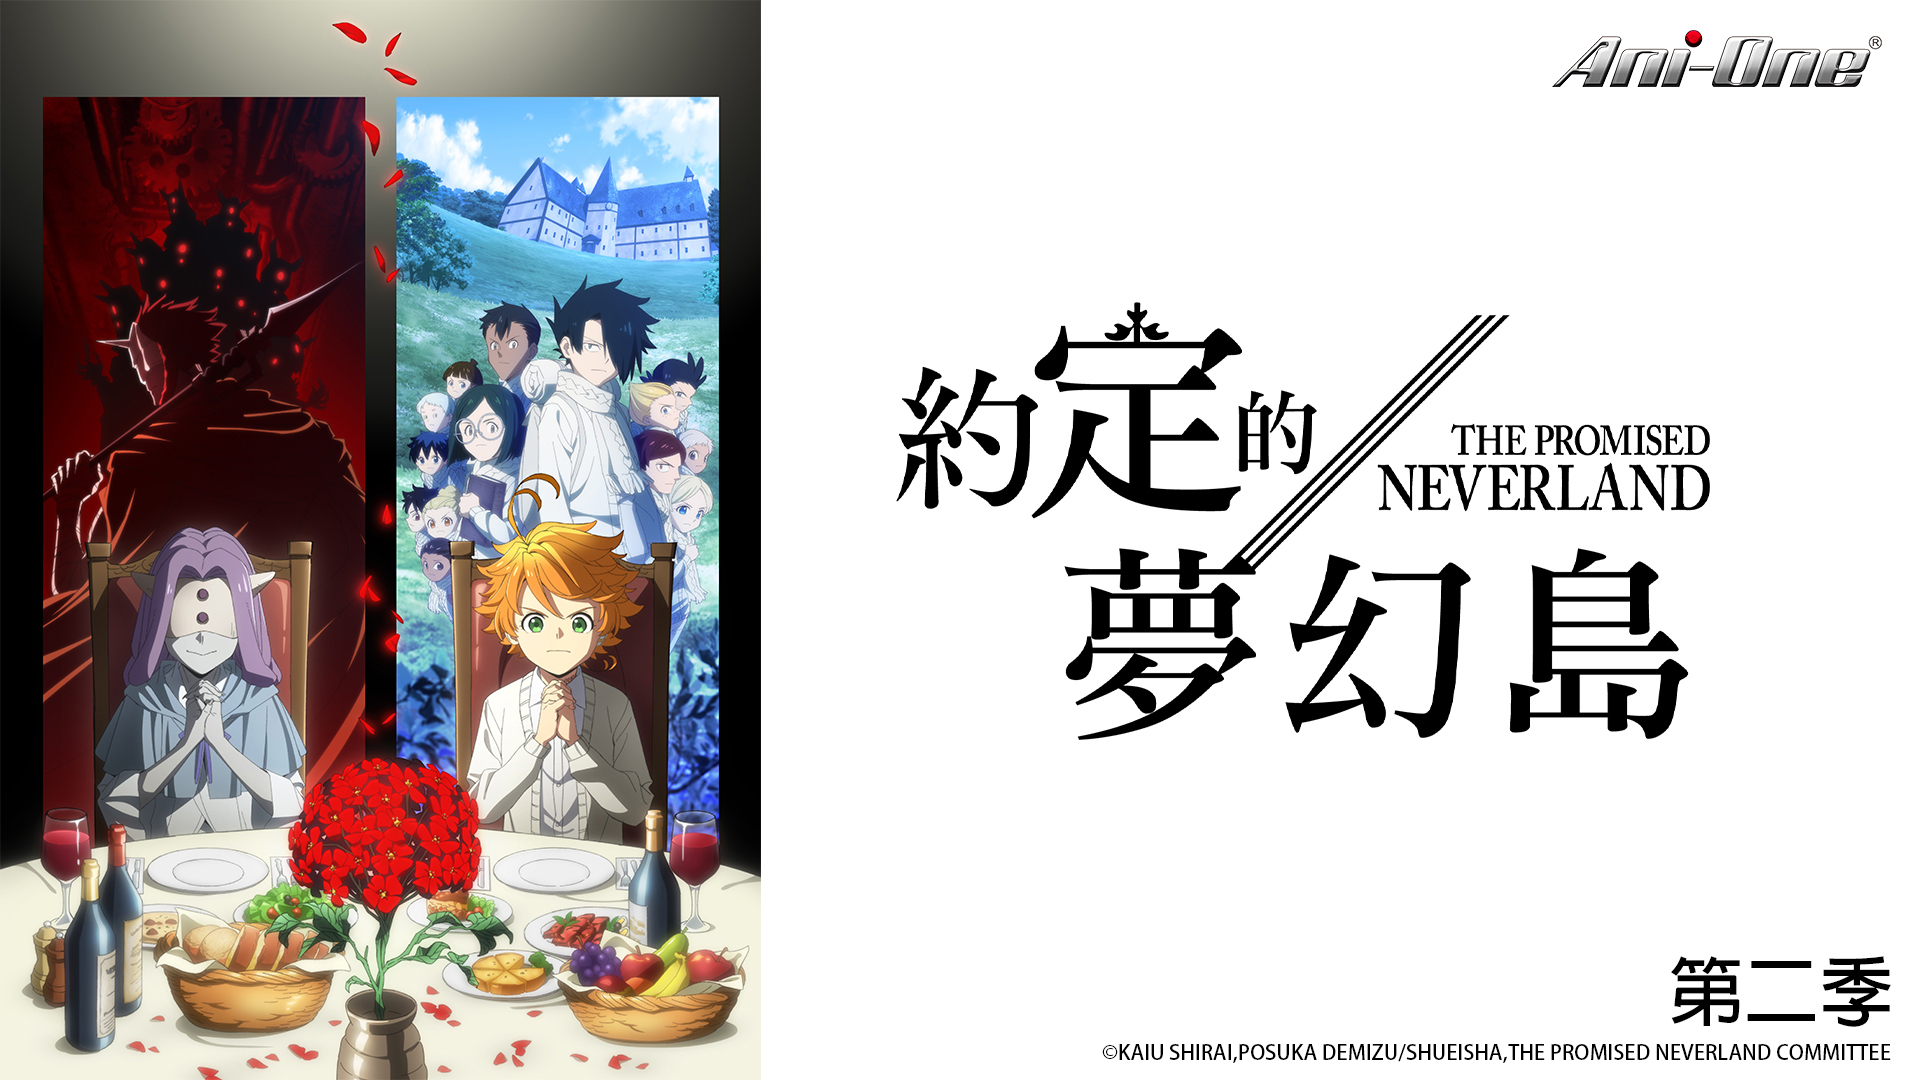 2 New Haikyu!! OVAs Added by Ani-One Asia